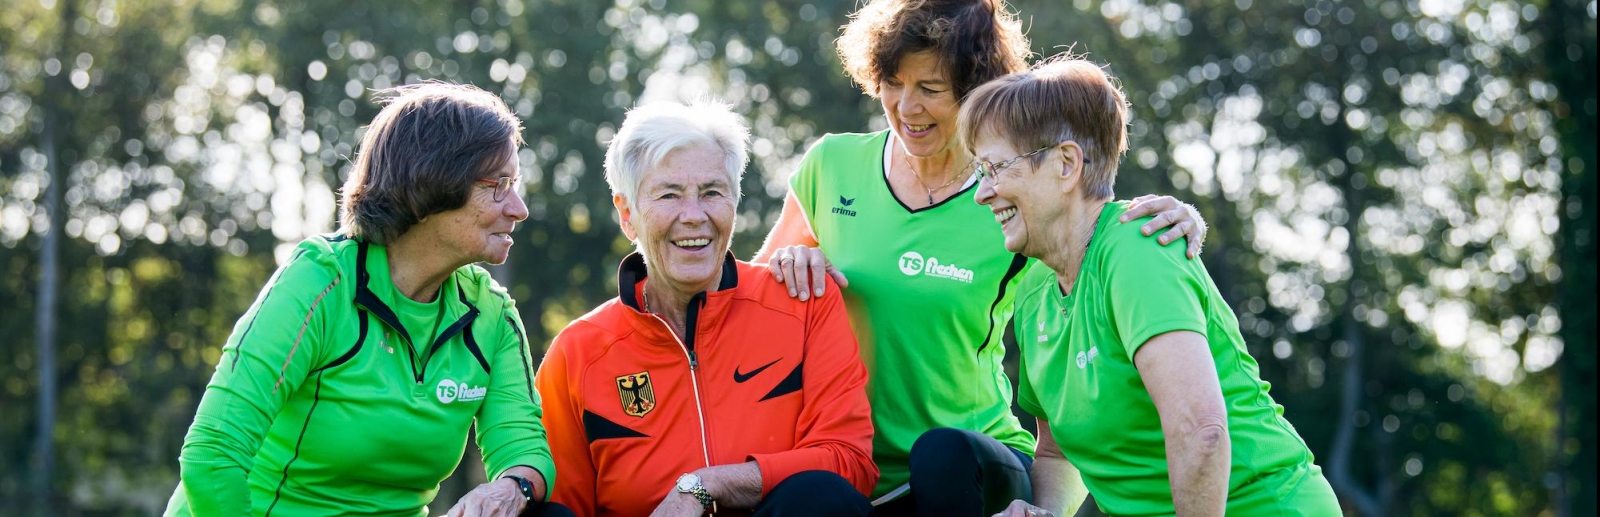 Vier ältere Damen bei einer Teambesprechung beim Sport. Drei Damen haben ein grünes Oberteil an, eine Dame in der Mitte hat ein rotes Oberteil an. Alle haben schwarze Sporthosen an.